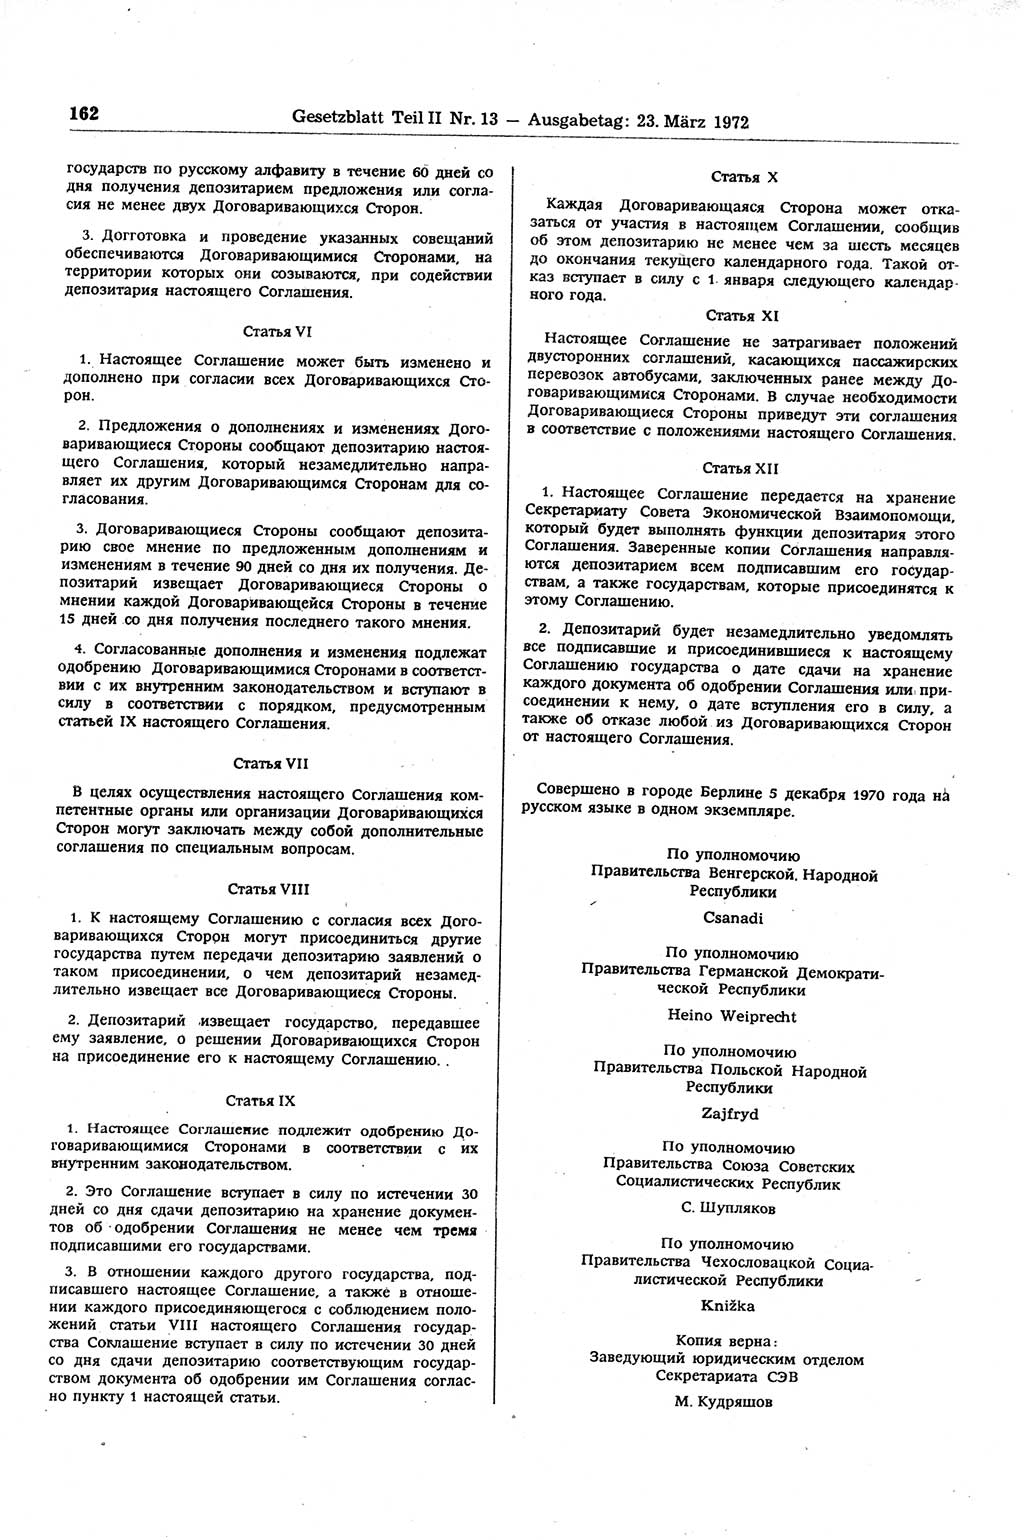 Gesetzblatt (GBl.) der Deutschen Demokratischen Republik (DDR) Teil ⅠⅠ 1972, Seite 162 (GBl. DDR ⅠⅠ 1972, S. 162)